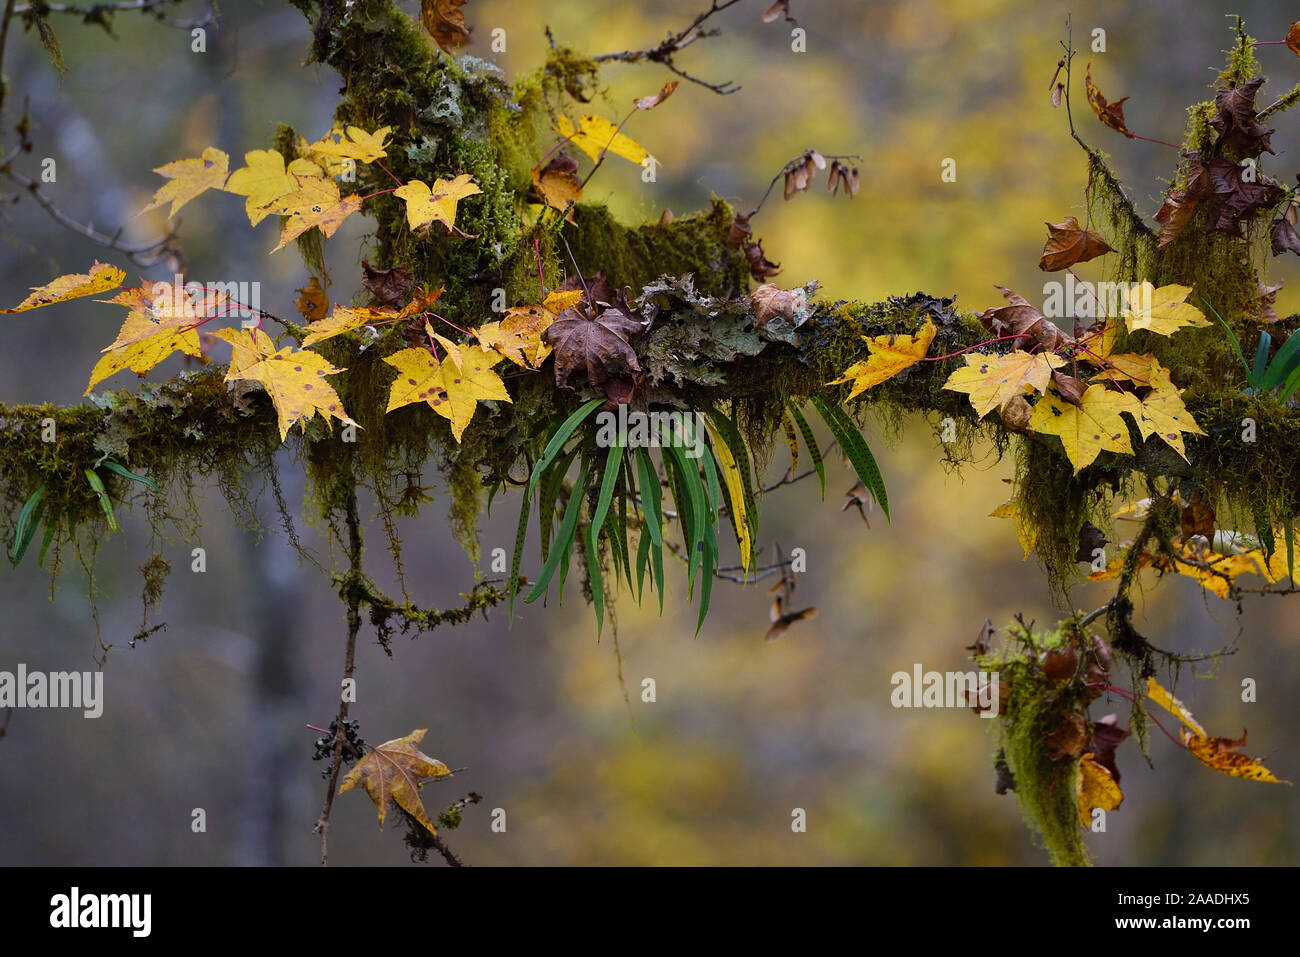 Hojas de otoño en el árbol cubiertas de musgo con helecho epifito. Mezcla de bosques montanos húmedos, Abap se reserva natural nacional, Sichuan, China Foto de stock